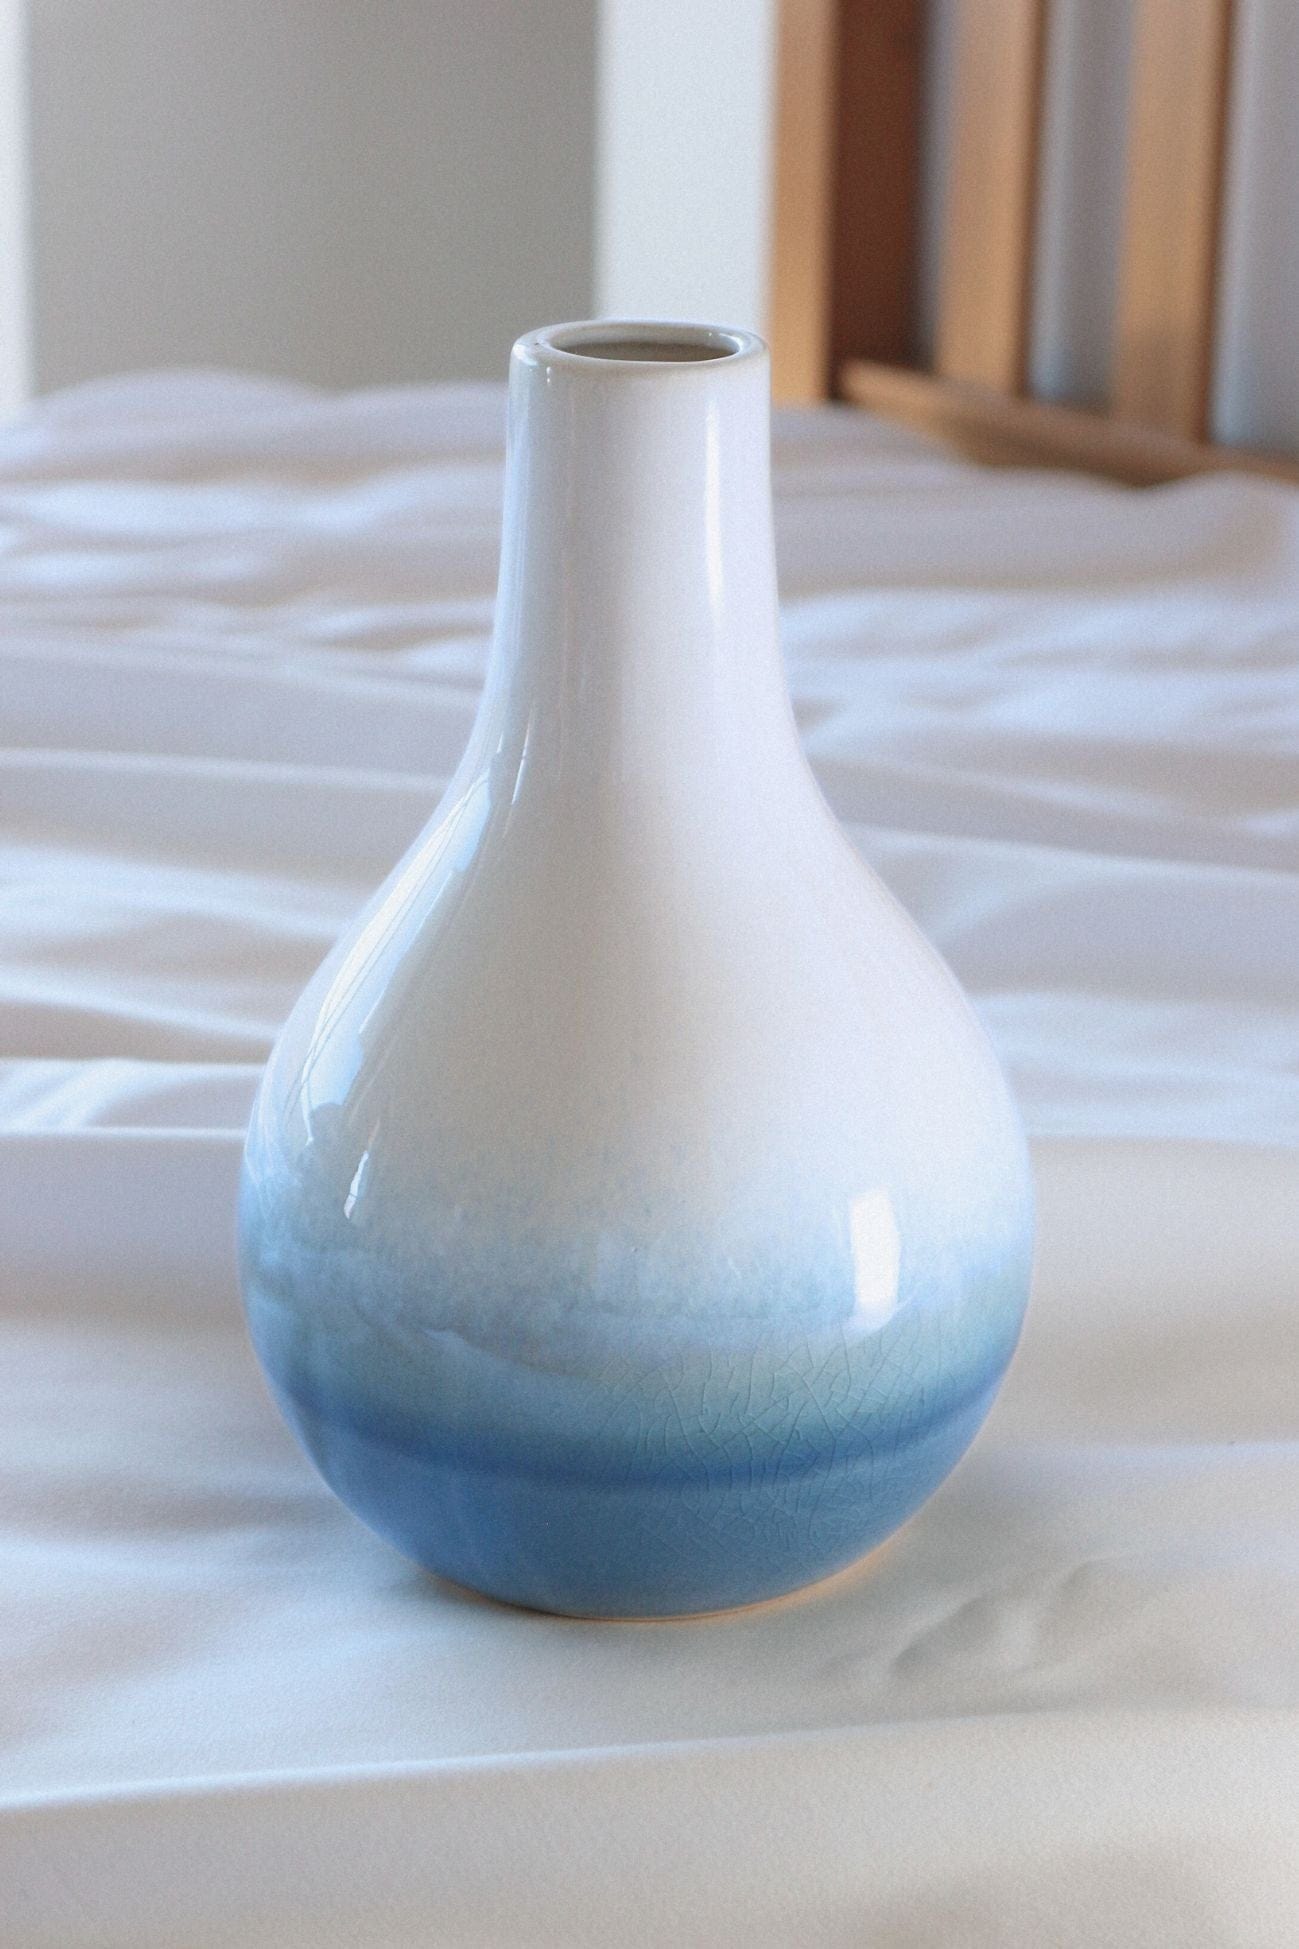 Item International Agua Agua - Vaso in porcellana sfumato con collo stretto | Item International